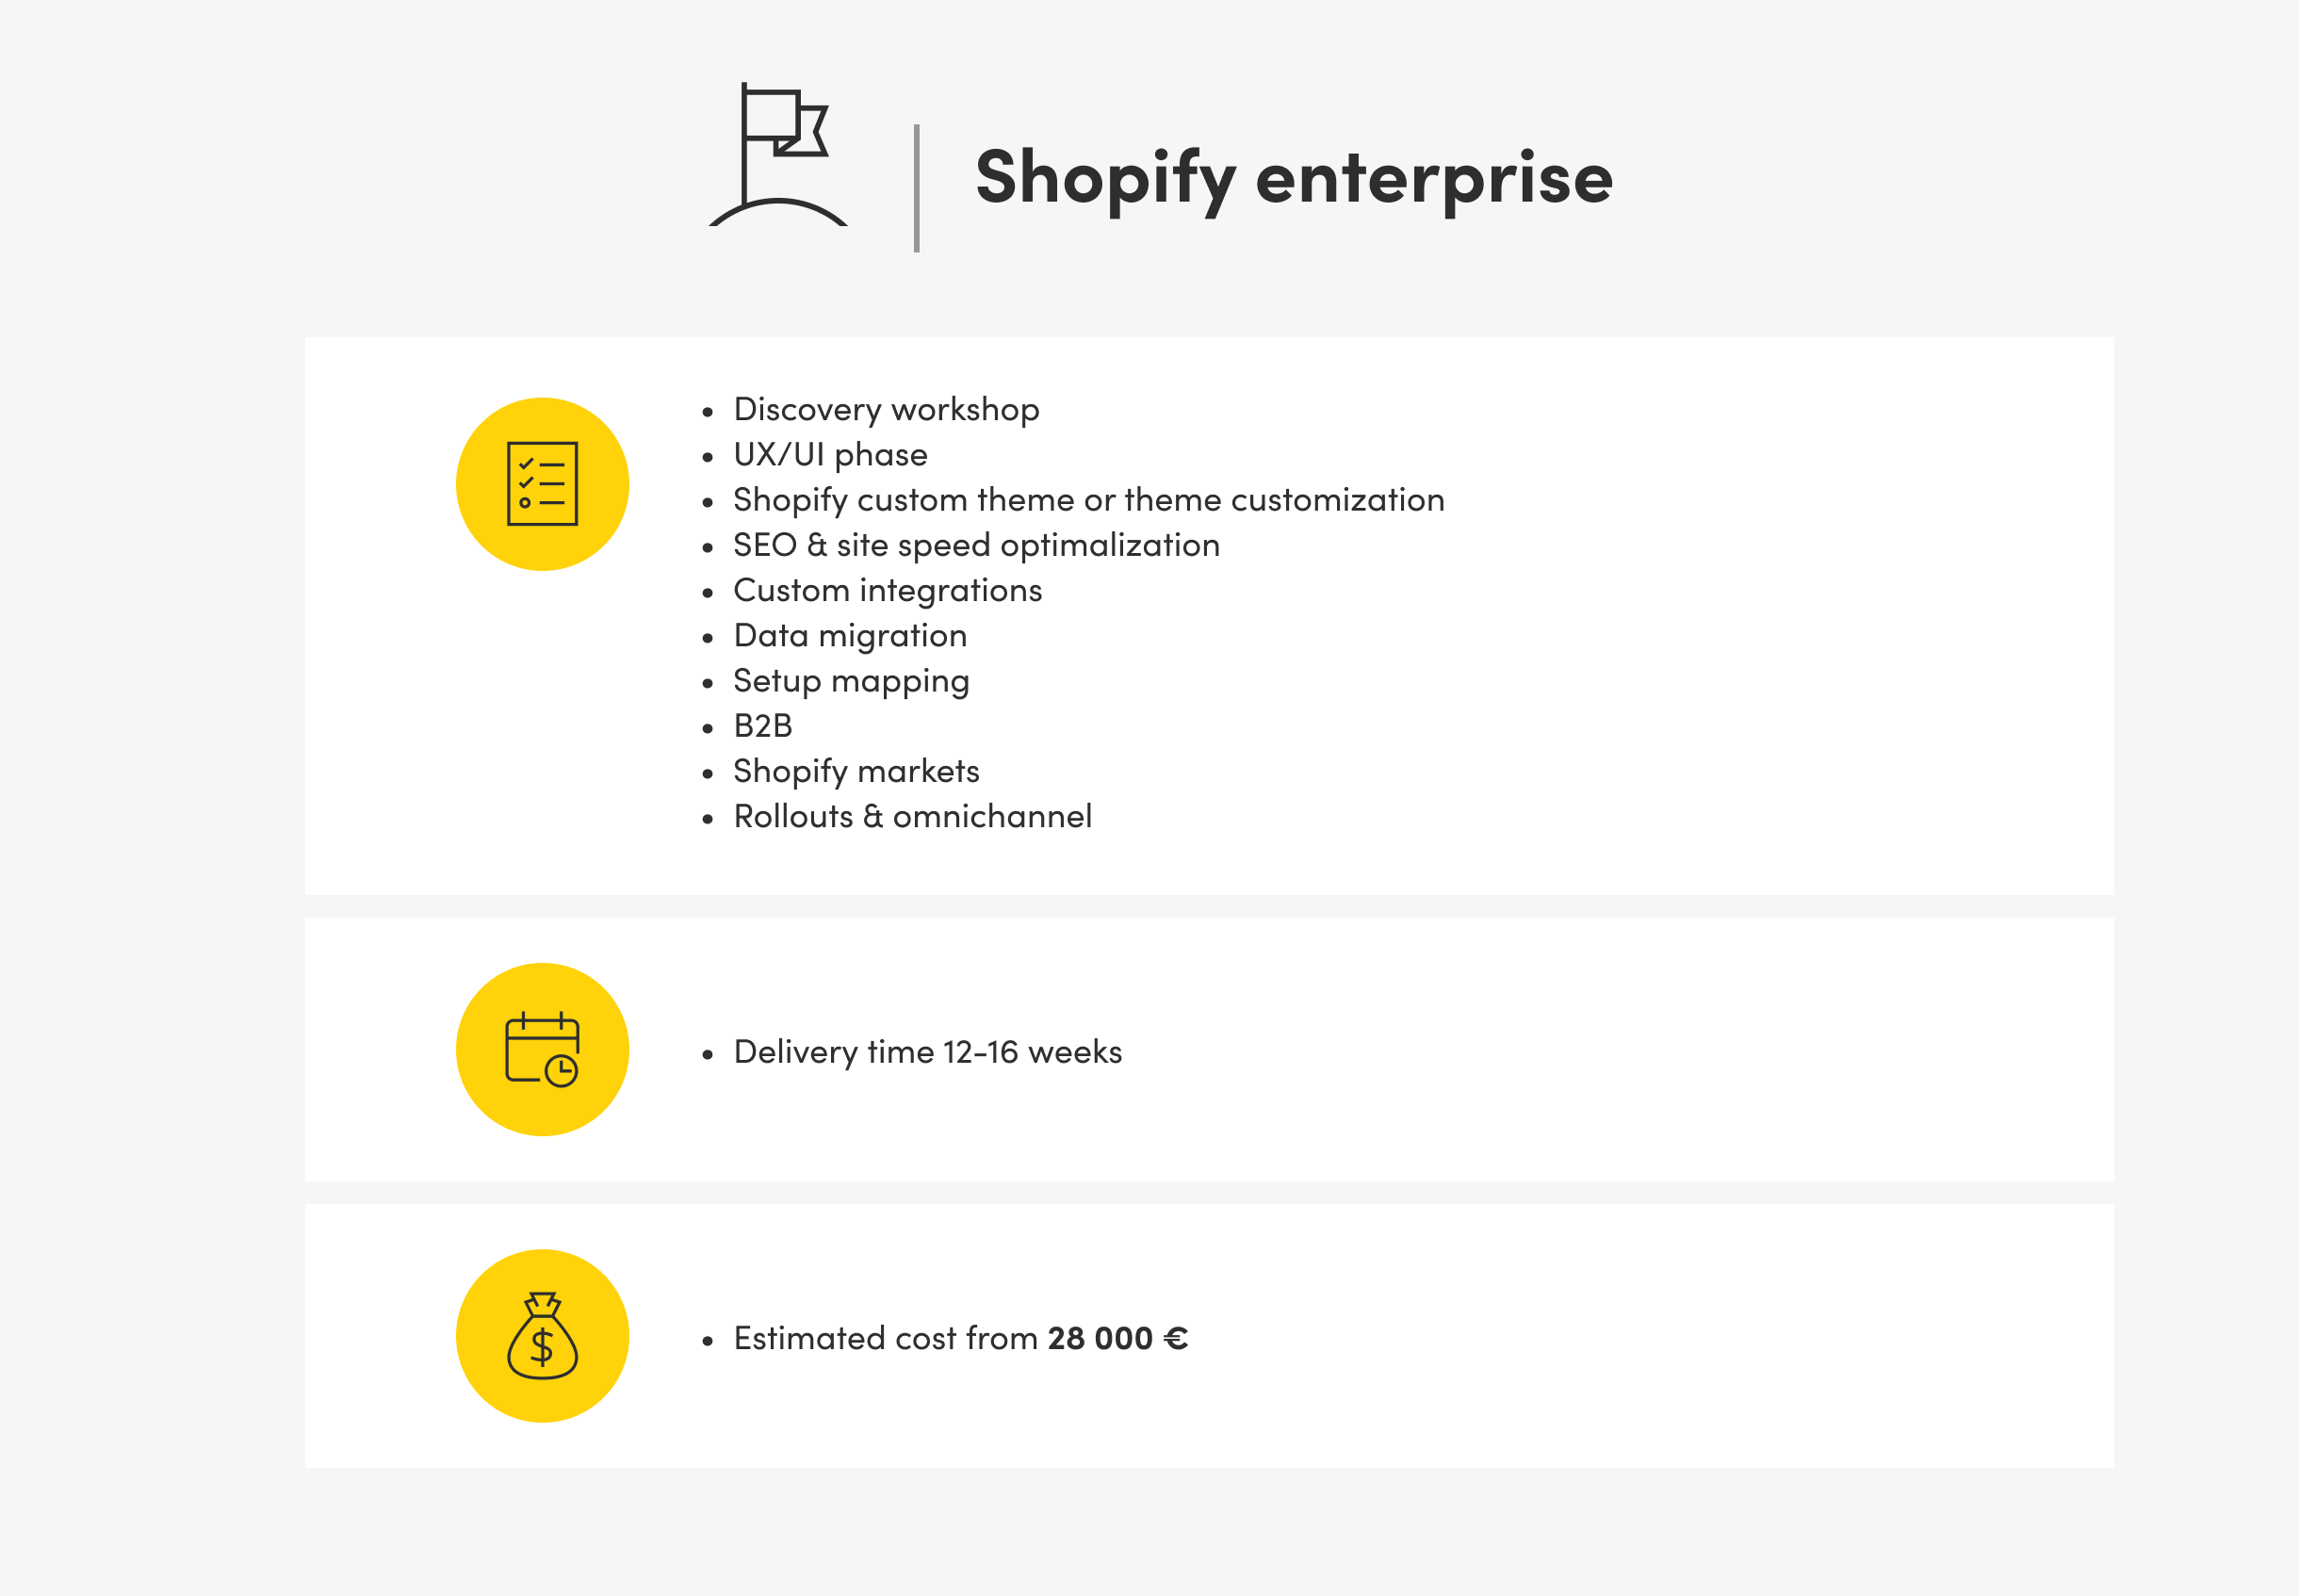 shopify enterprise plan details